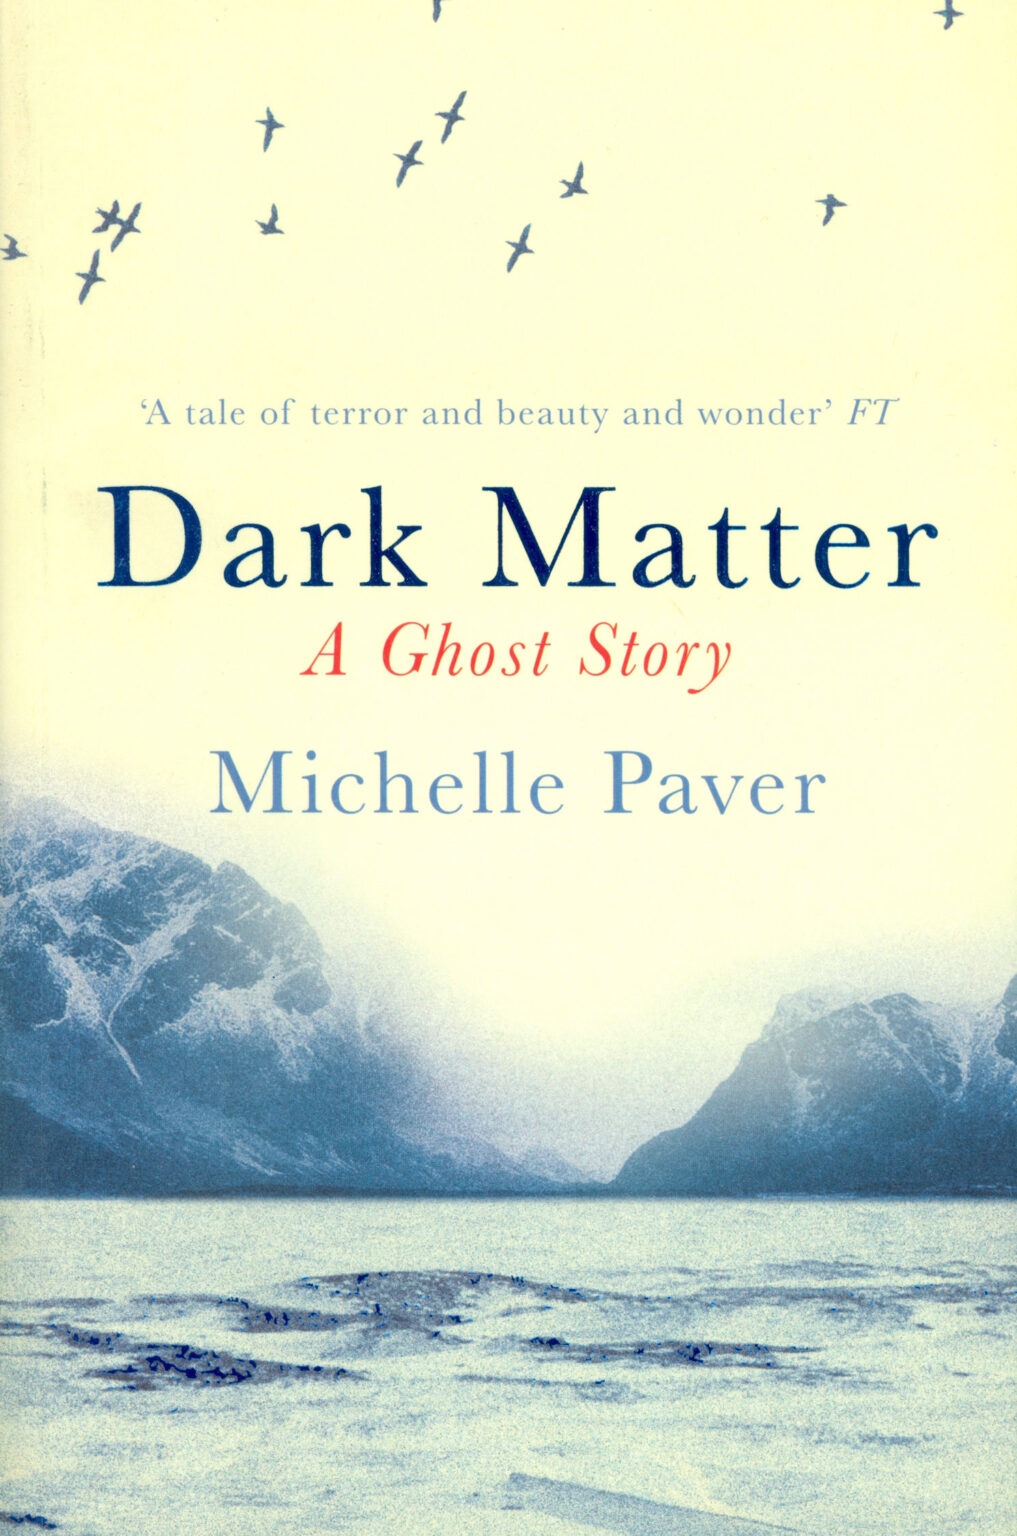 dark matter by michelle paver